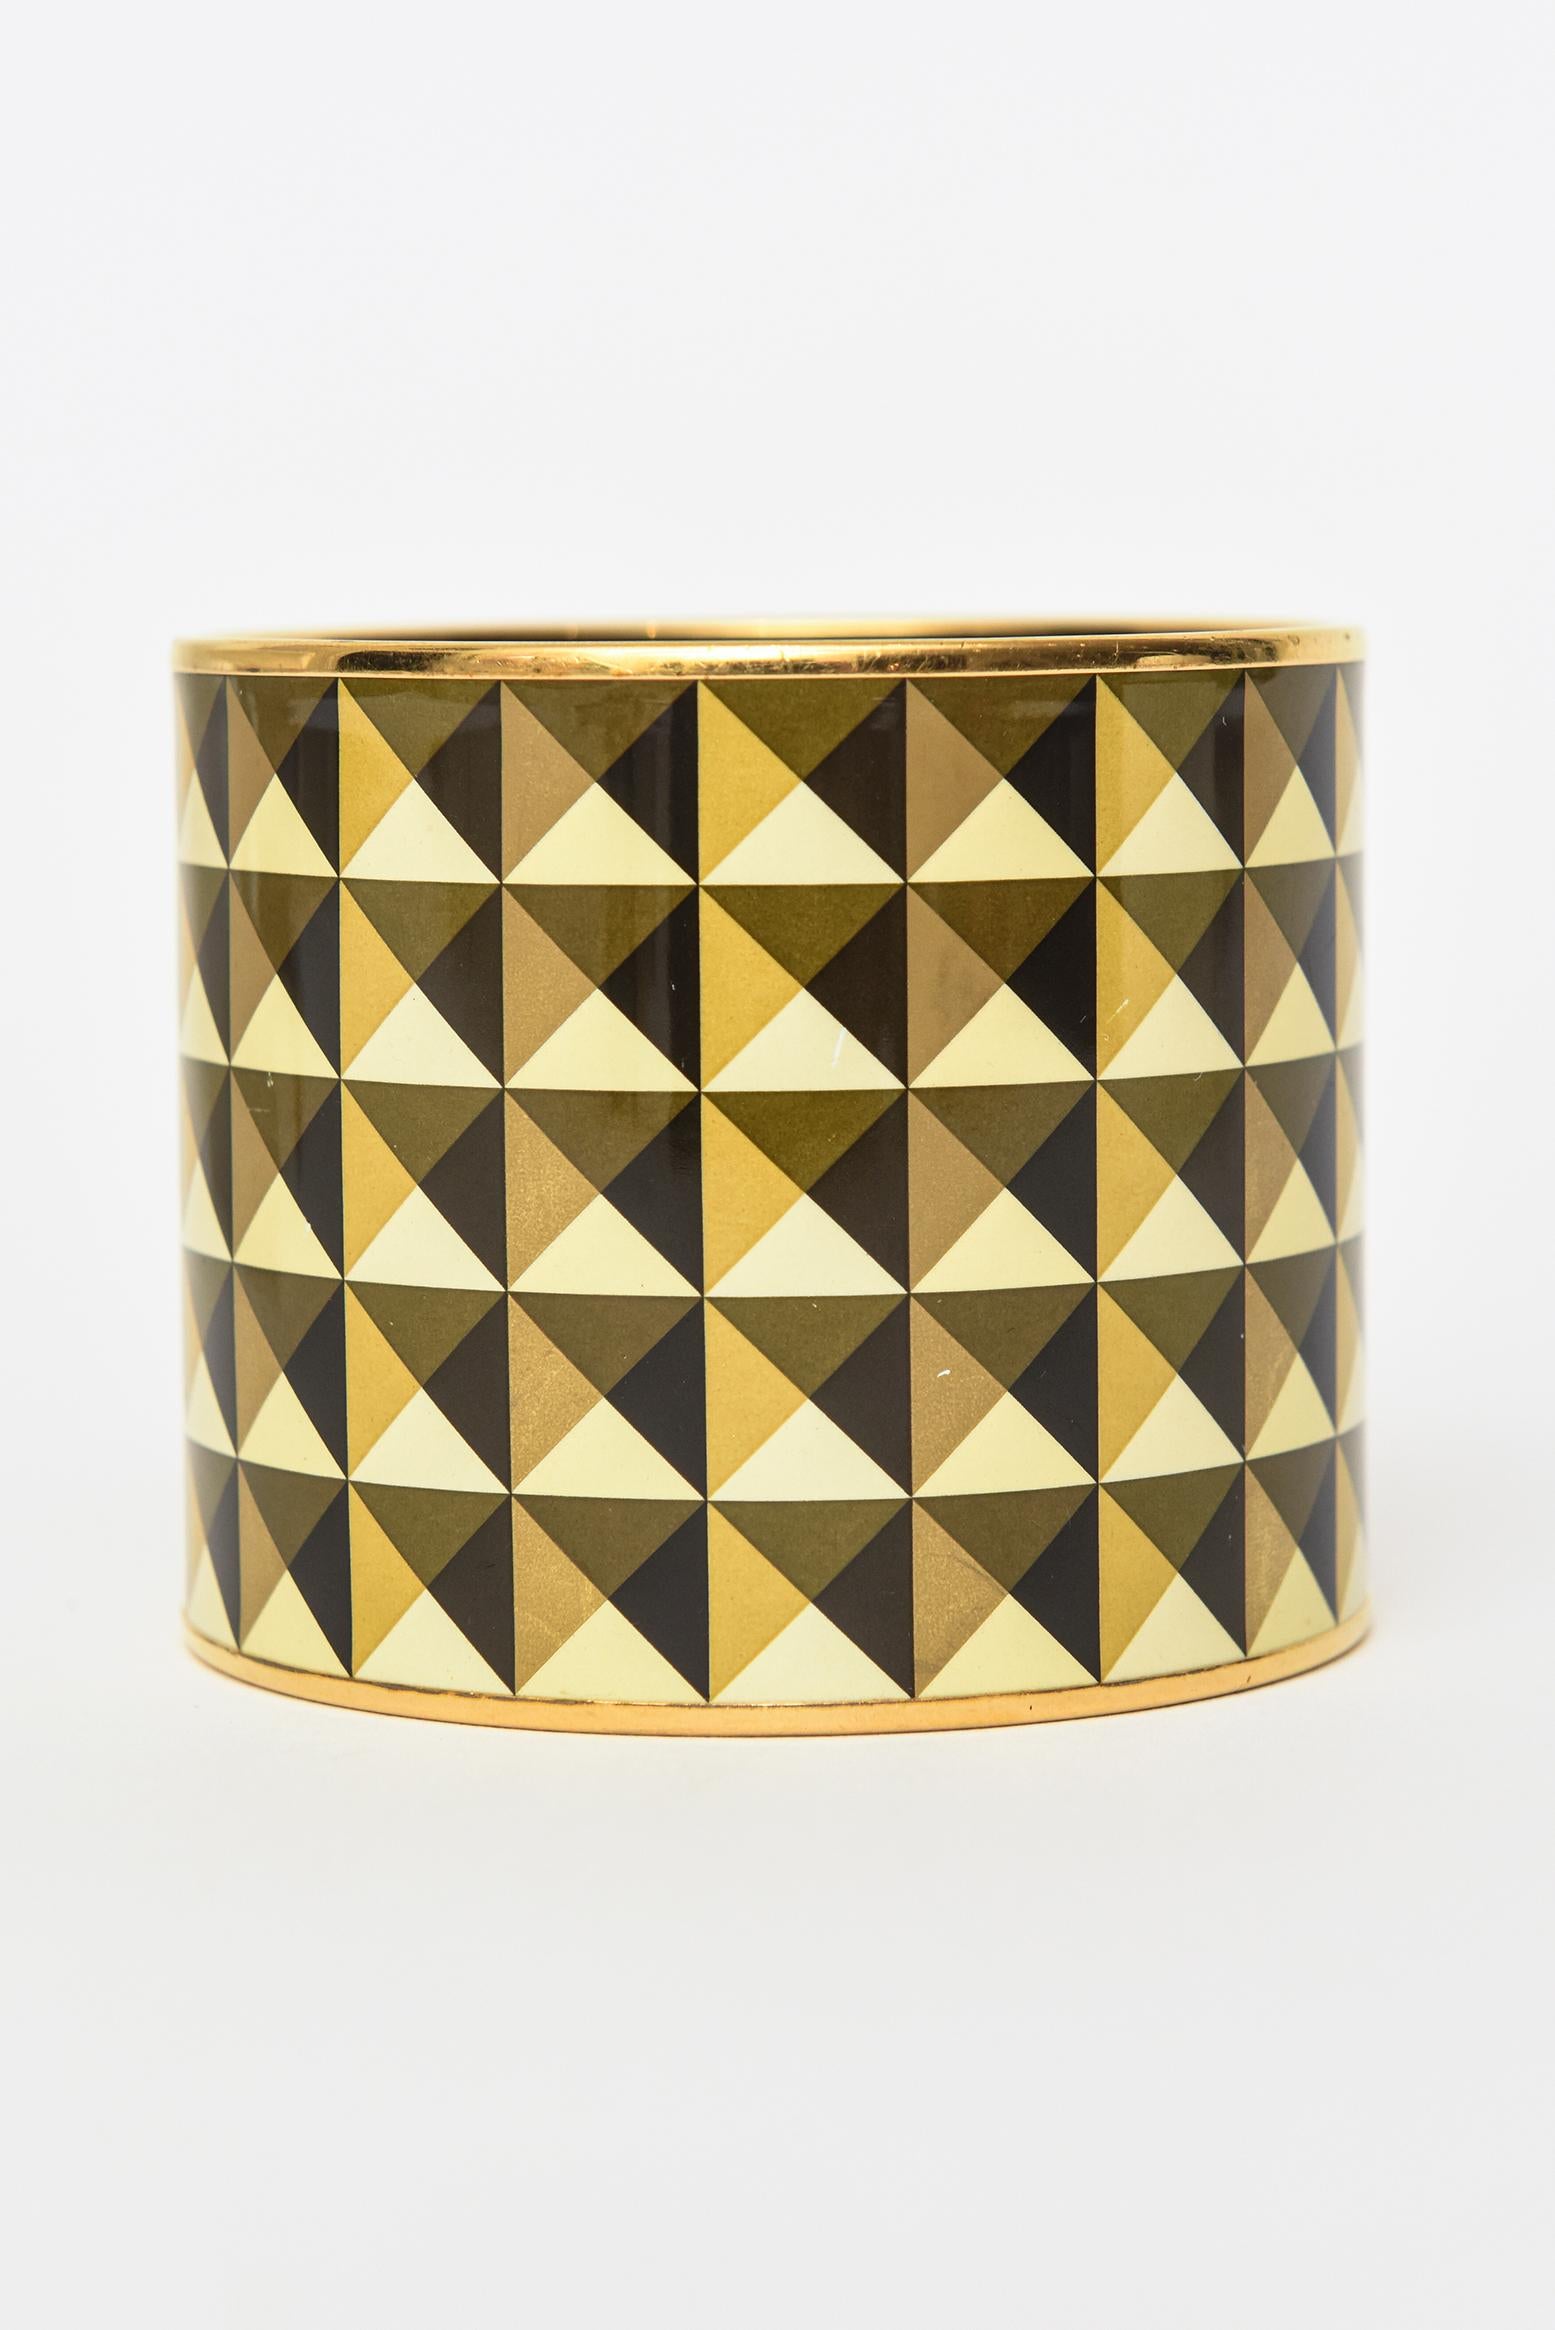 Ce fabuleux bracelet vintage Hermès à très large manchette émaillée présente un design géométrique. Le motif de demi-triangles en couleurs alternées de noir, jaune, or et brun olive est d'une beauté envoûtante. La bande métallique en laiton se